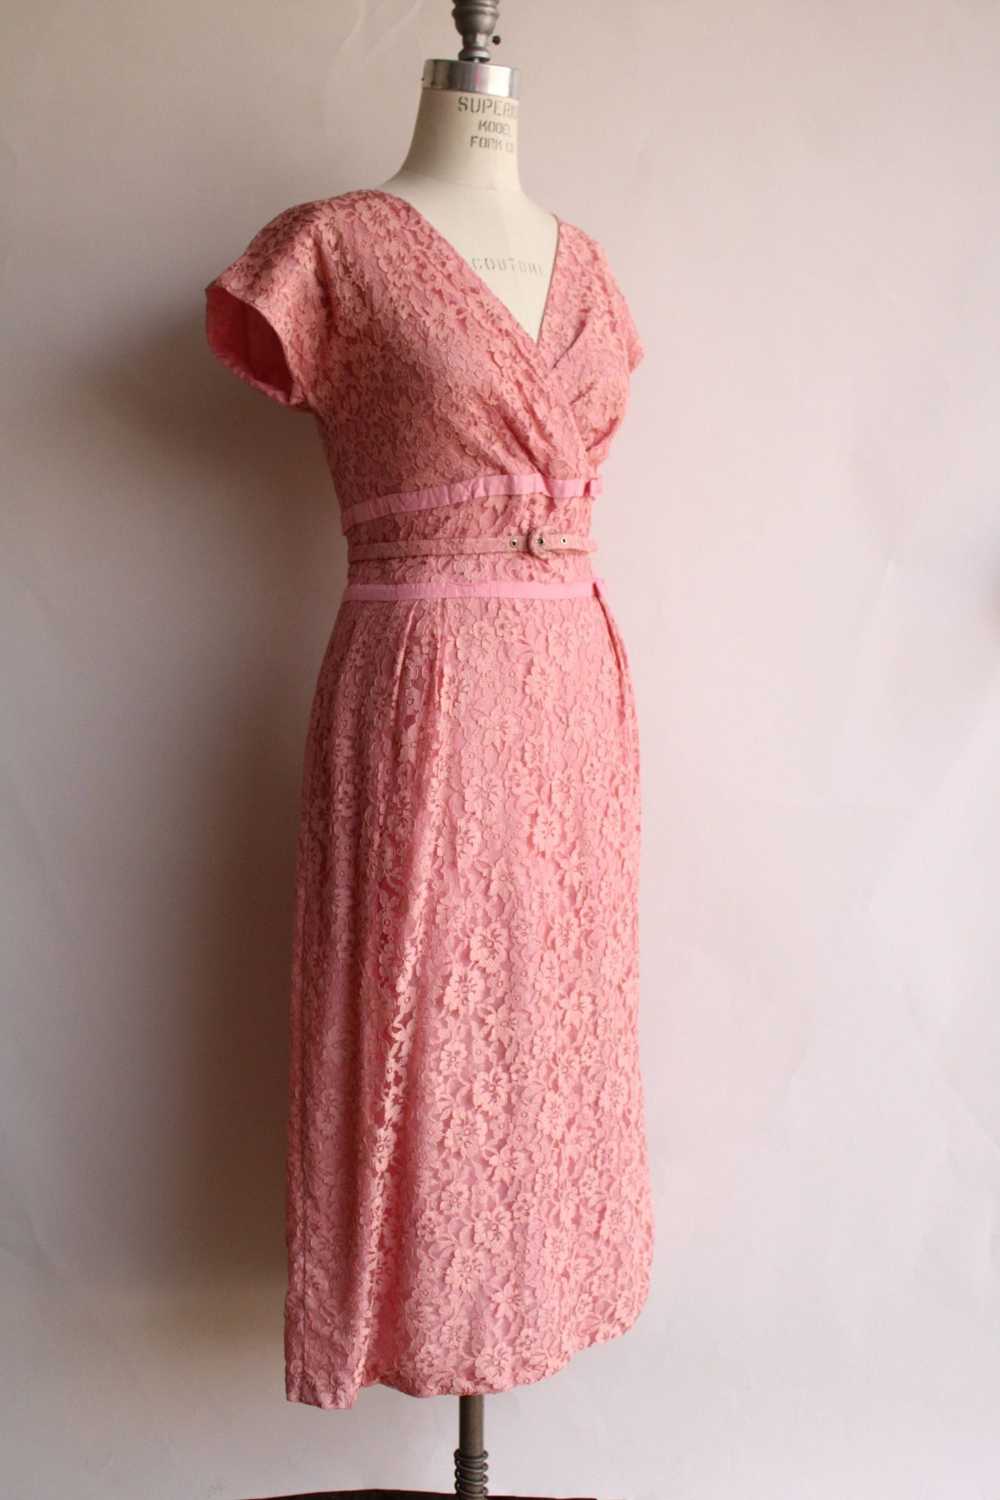 Vintage Vintage 1940s 1950s Dress with Belt, Pink… - image 5